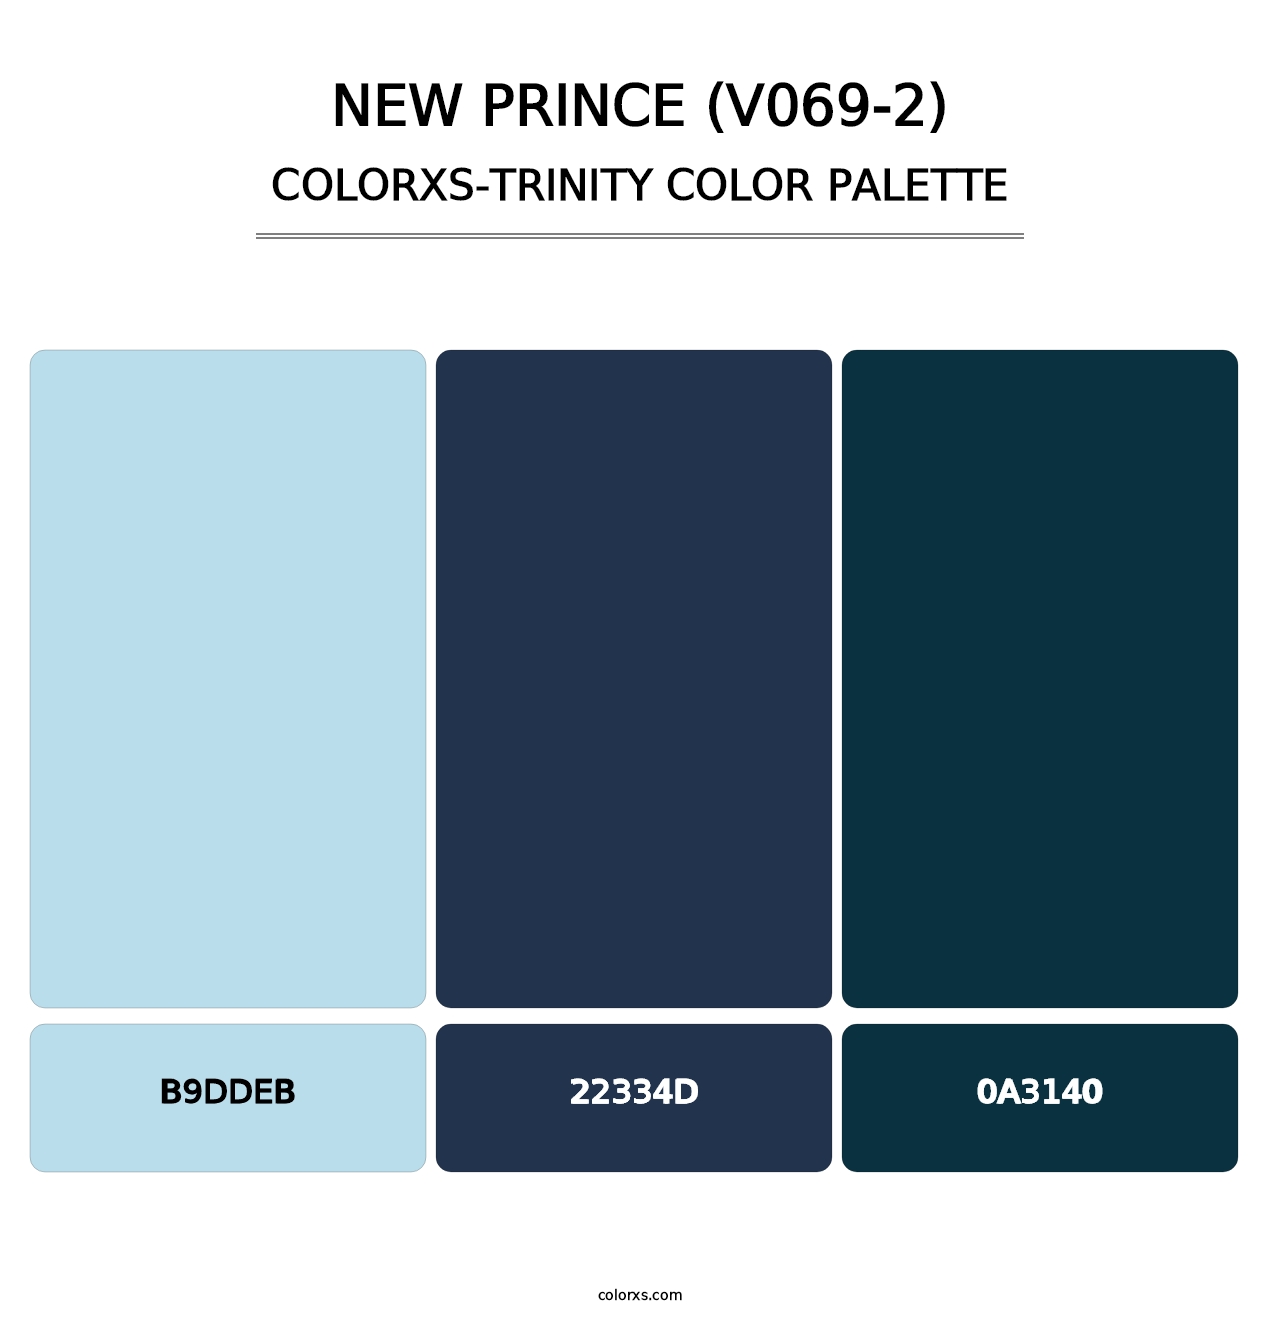 New Prince (V069-2) - Colorxs Trinity Palette